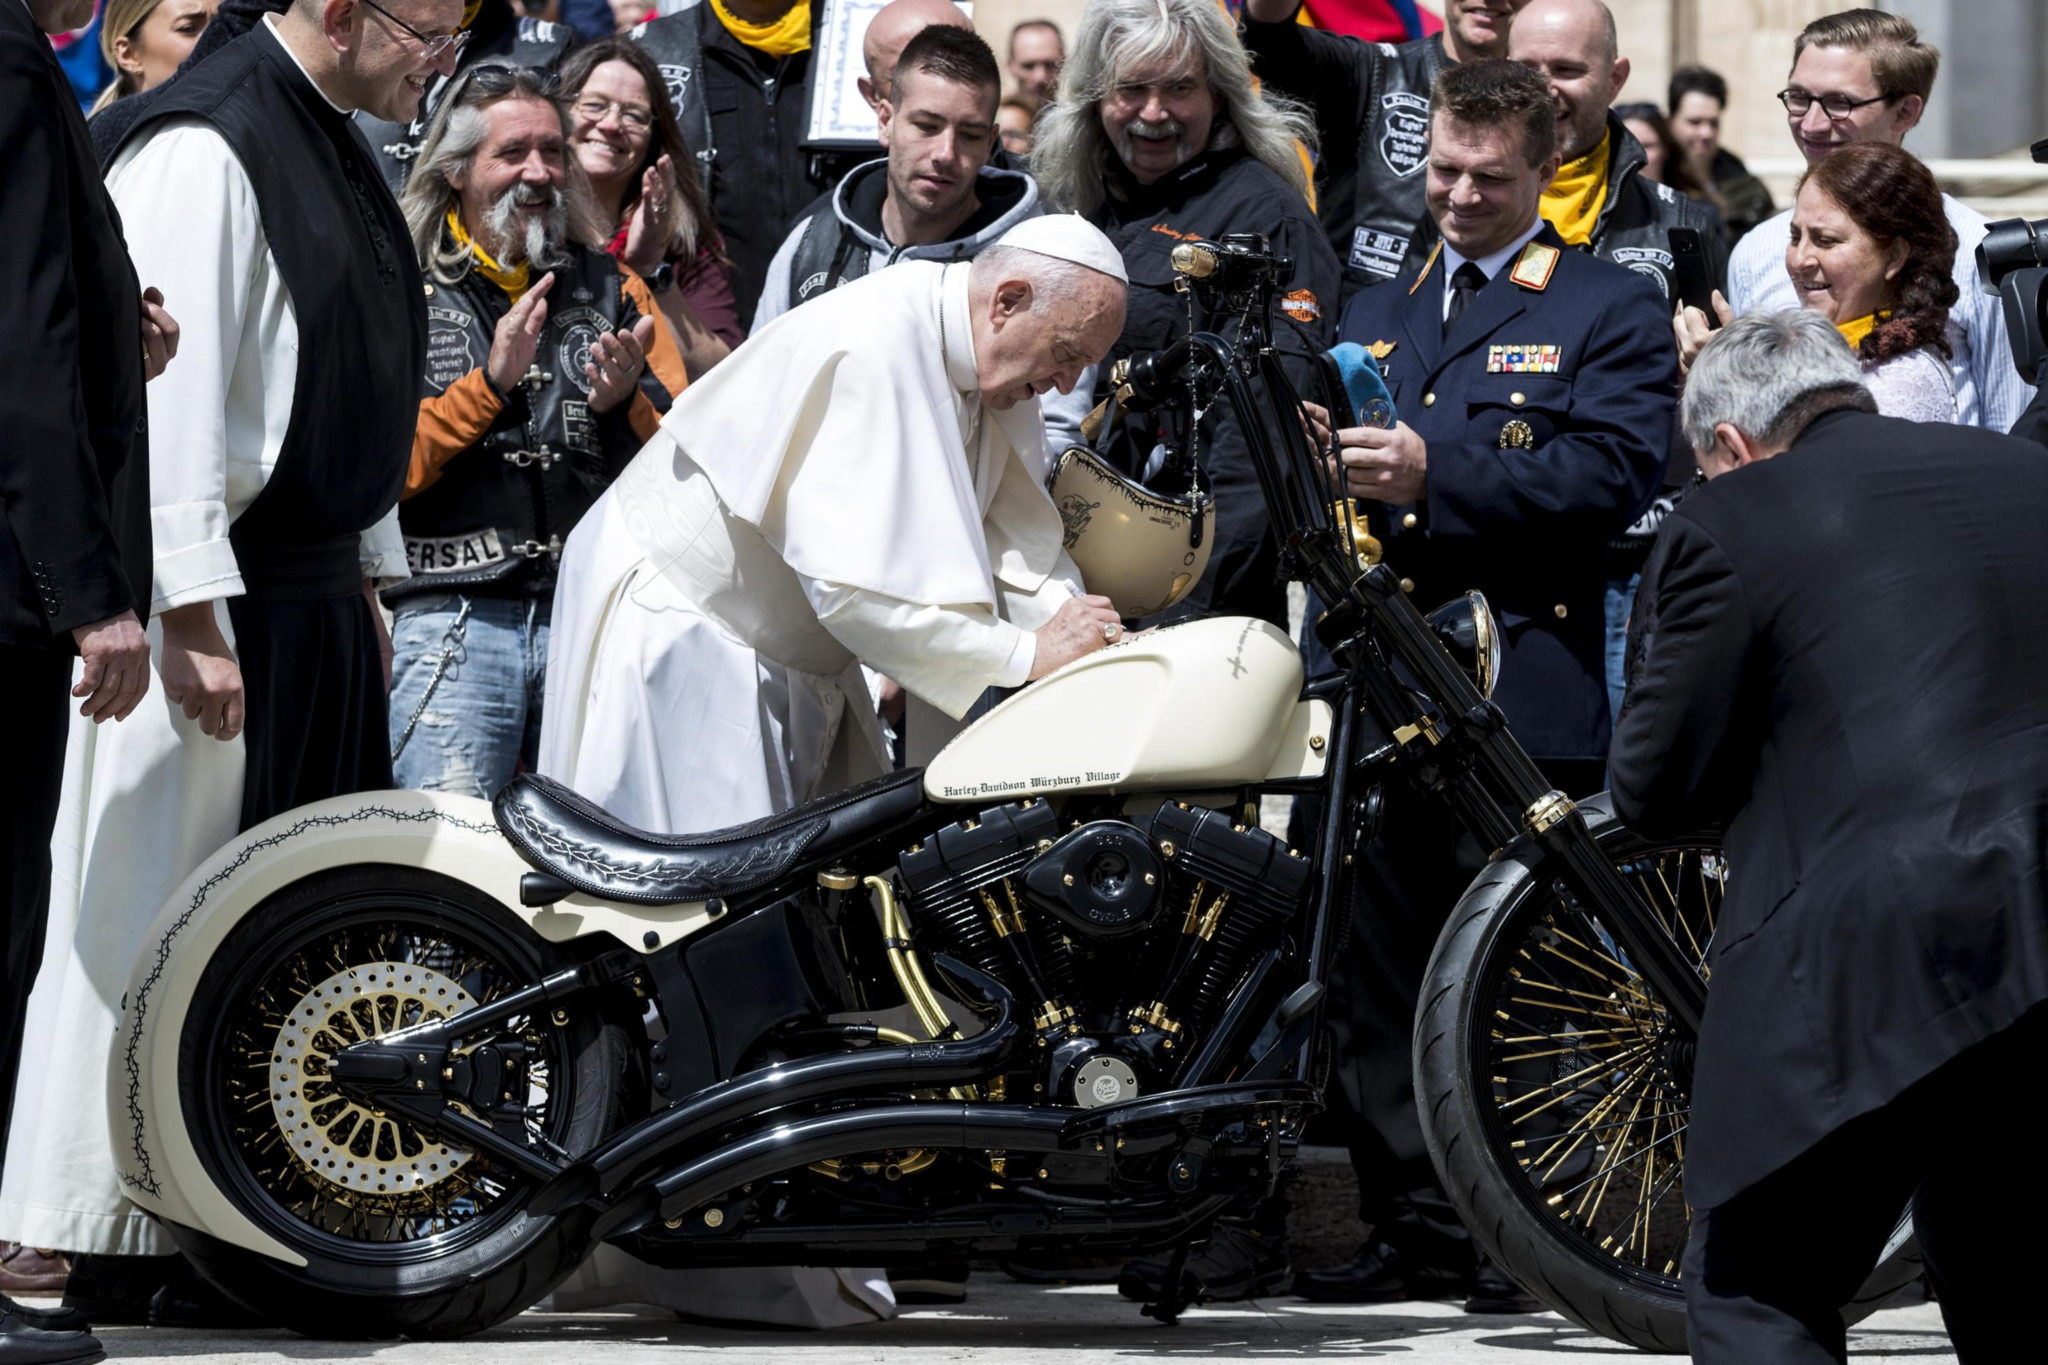 Papież razem z motocyklistami ze stowarzyszenia „Jesus bikers” przy motocyklu Harley-Davidson, fot. ANGELO CARCONI, PAP/EPA 